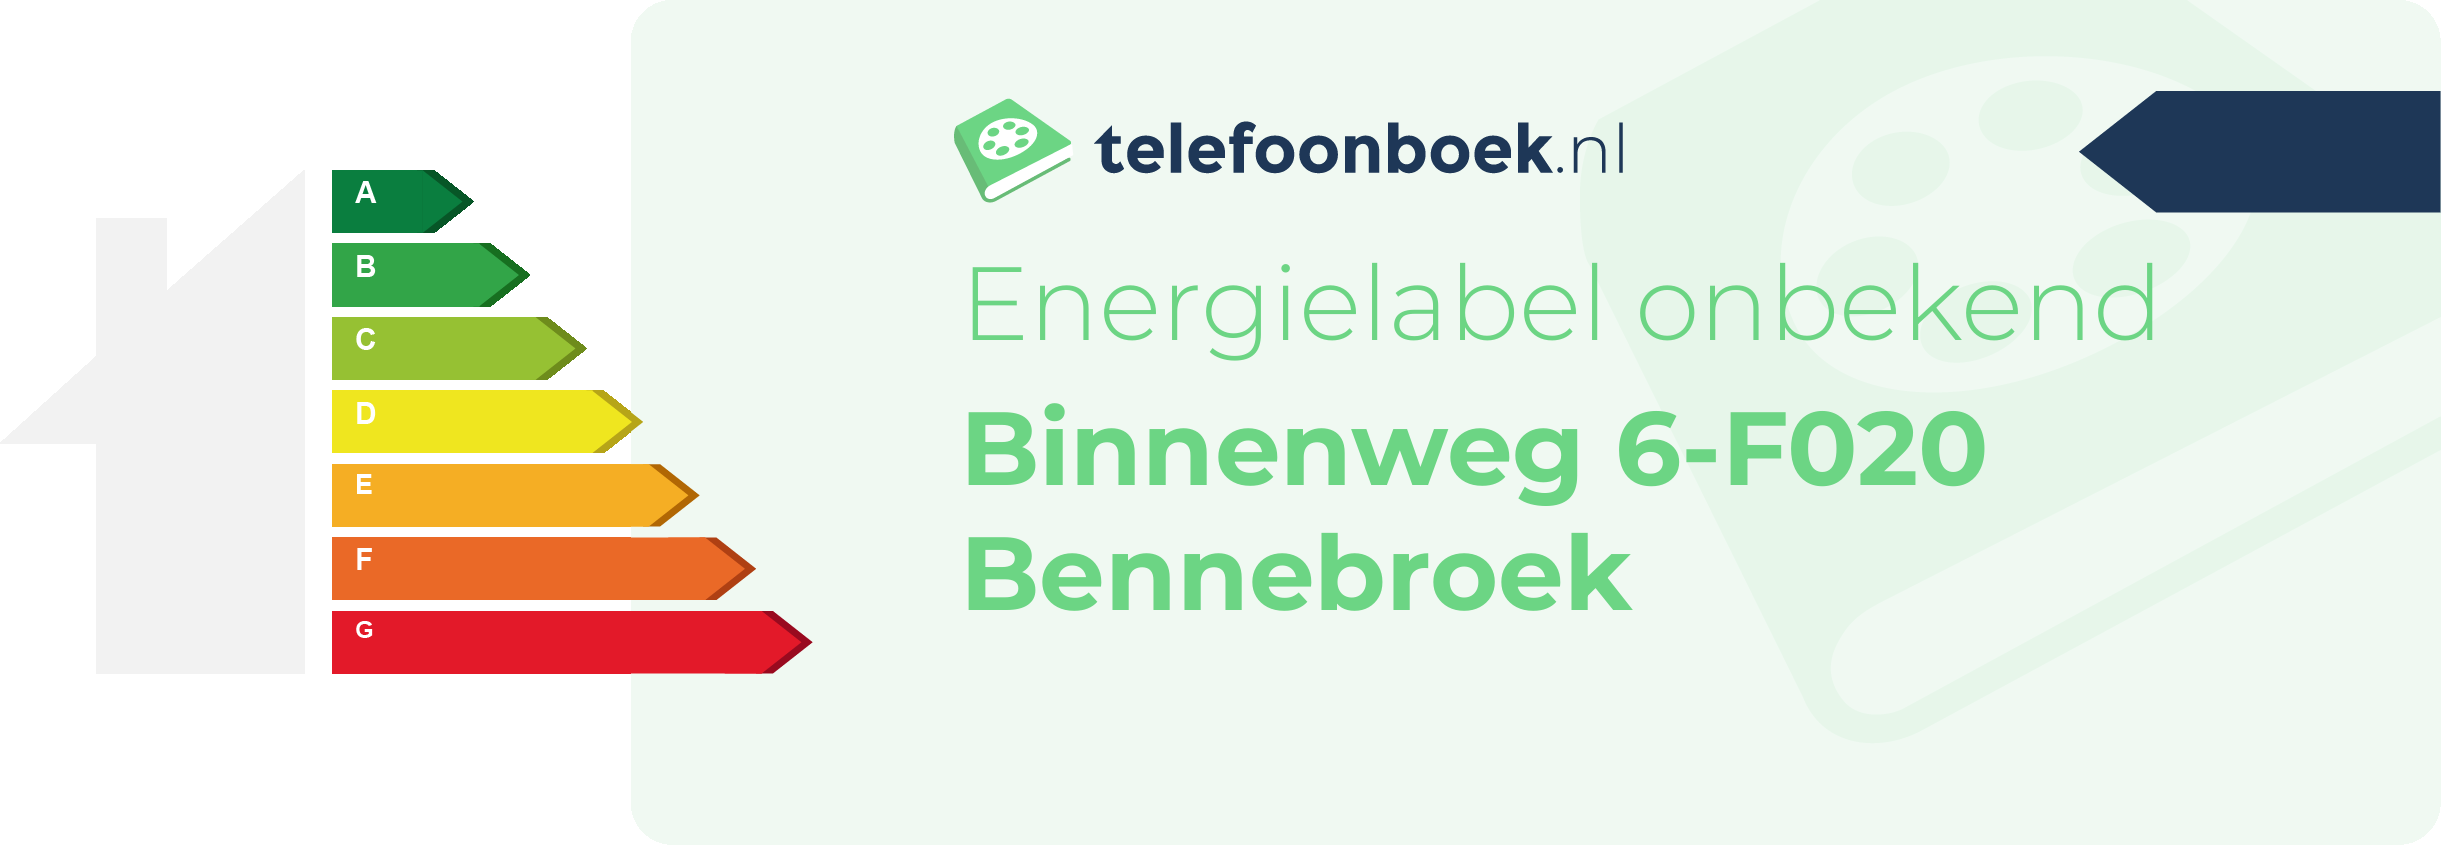 Energielabel Binnenweg 6-F020 Bennebroek